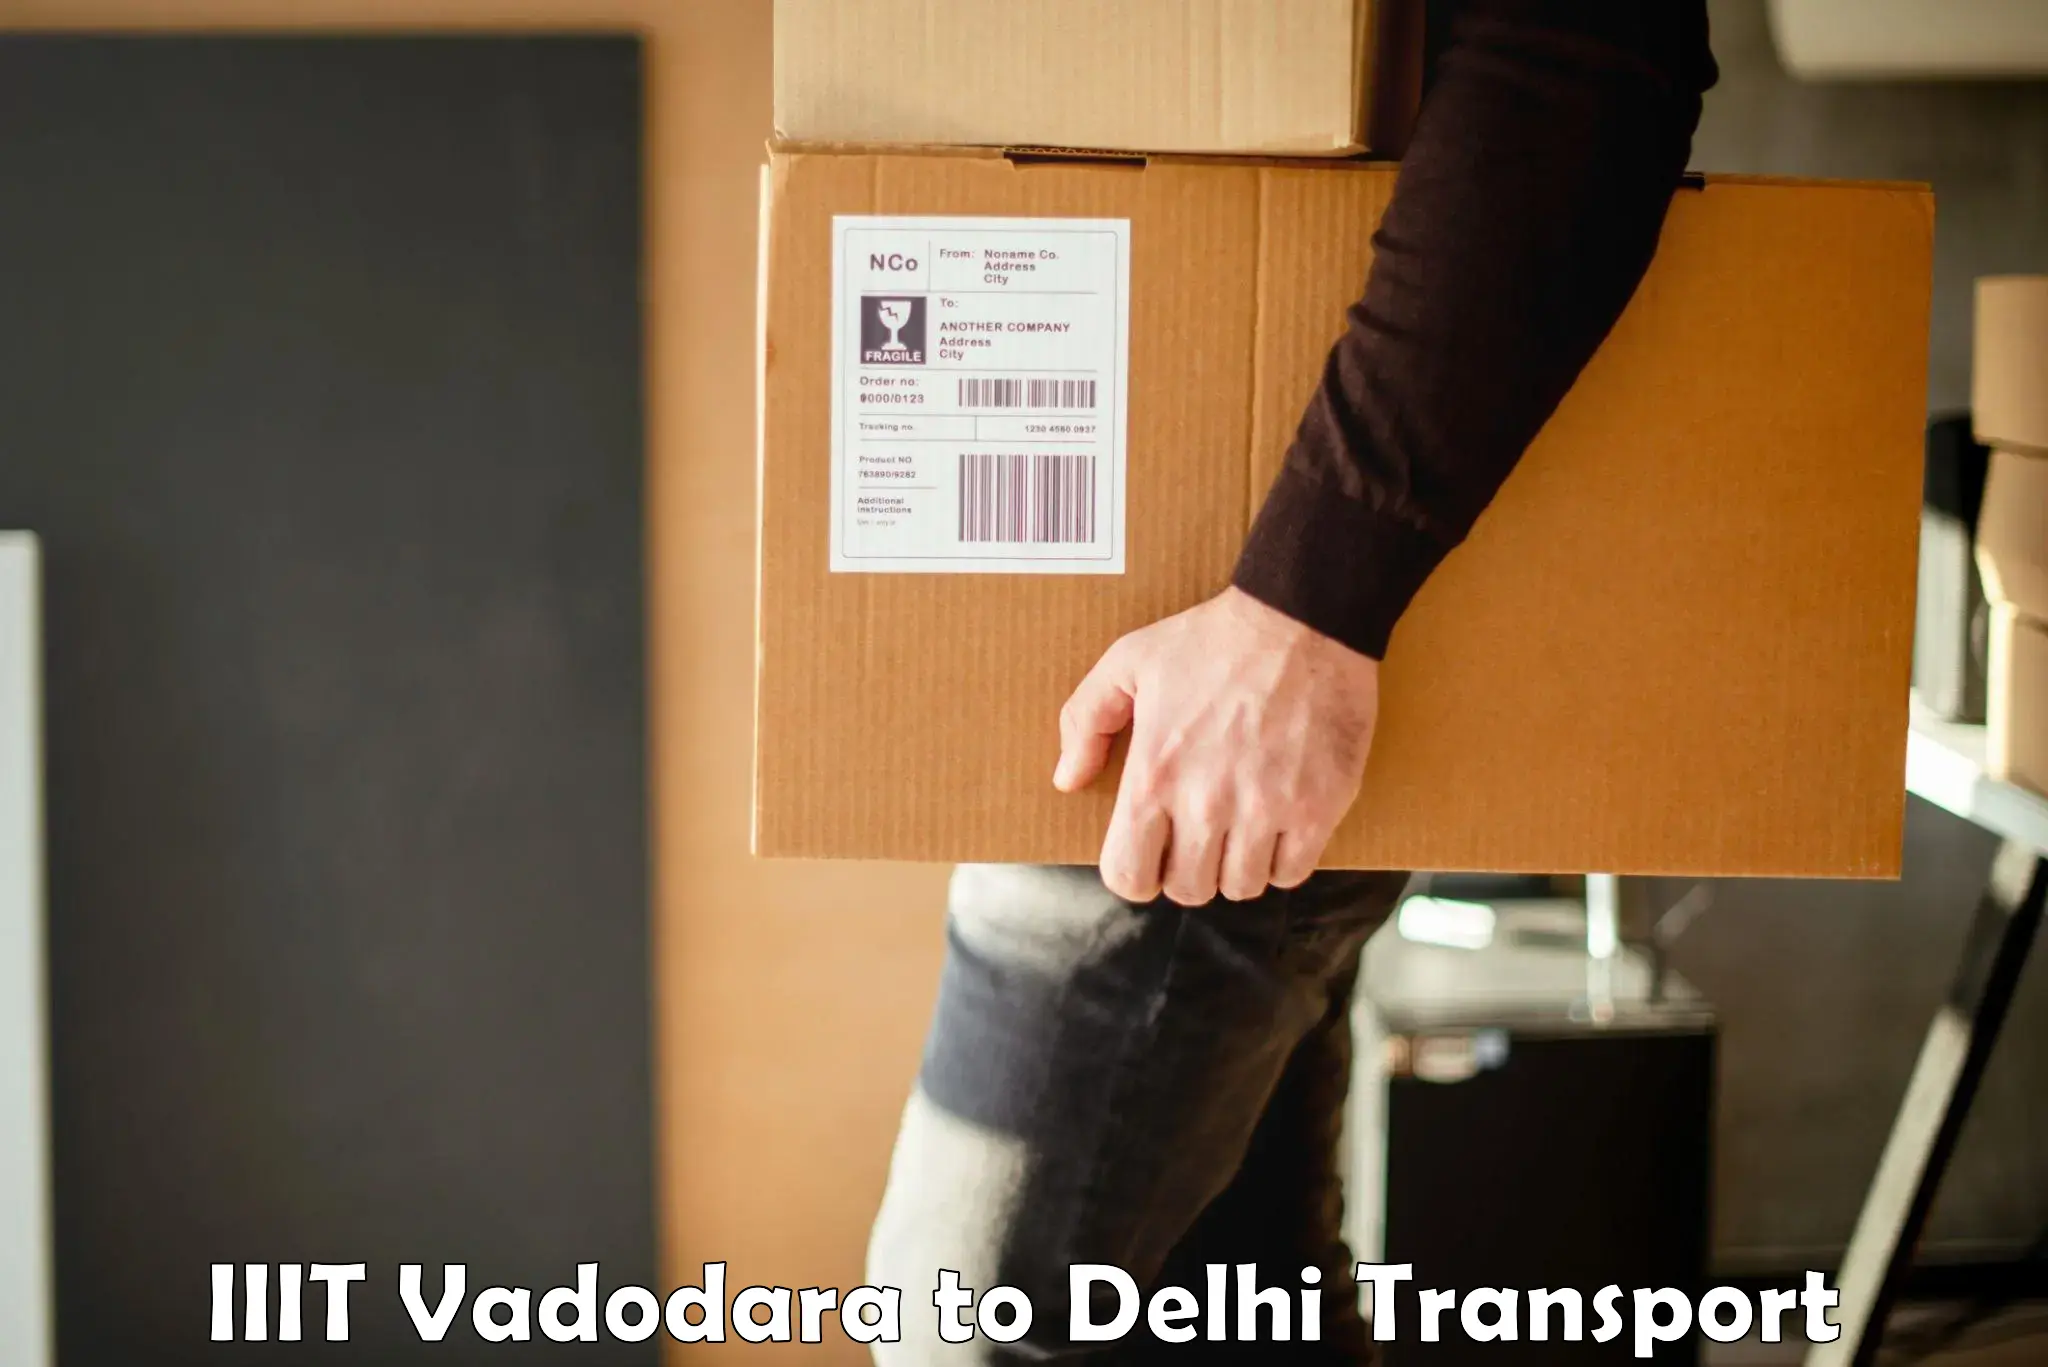 Express transport services in IIIT Vadodara to Delhi